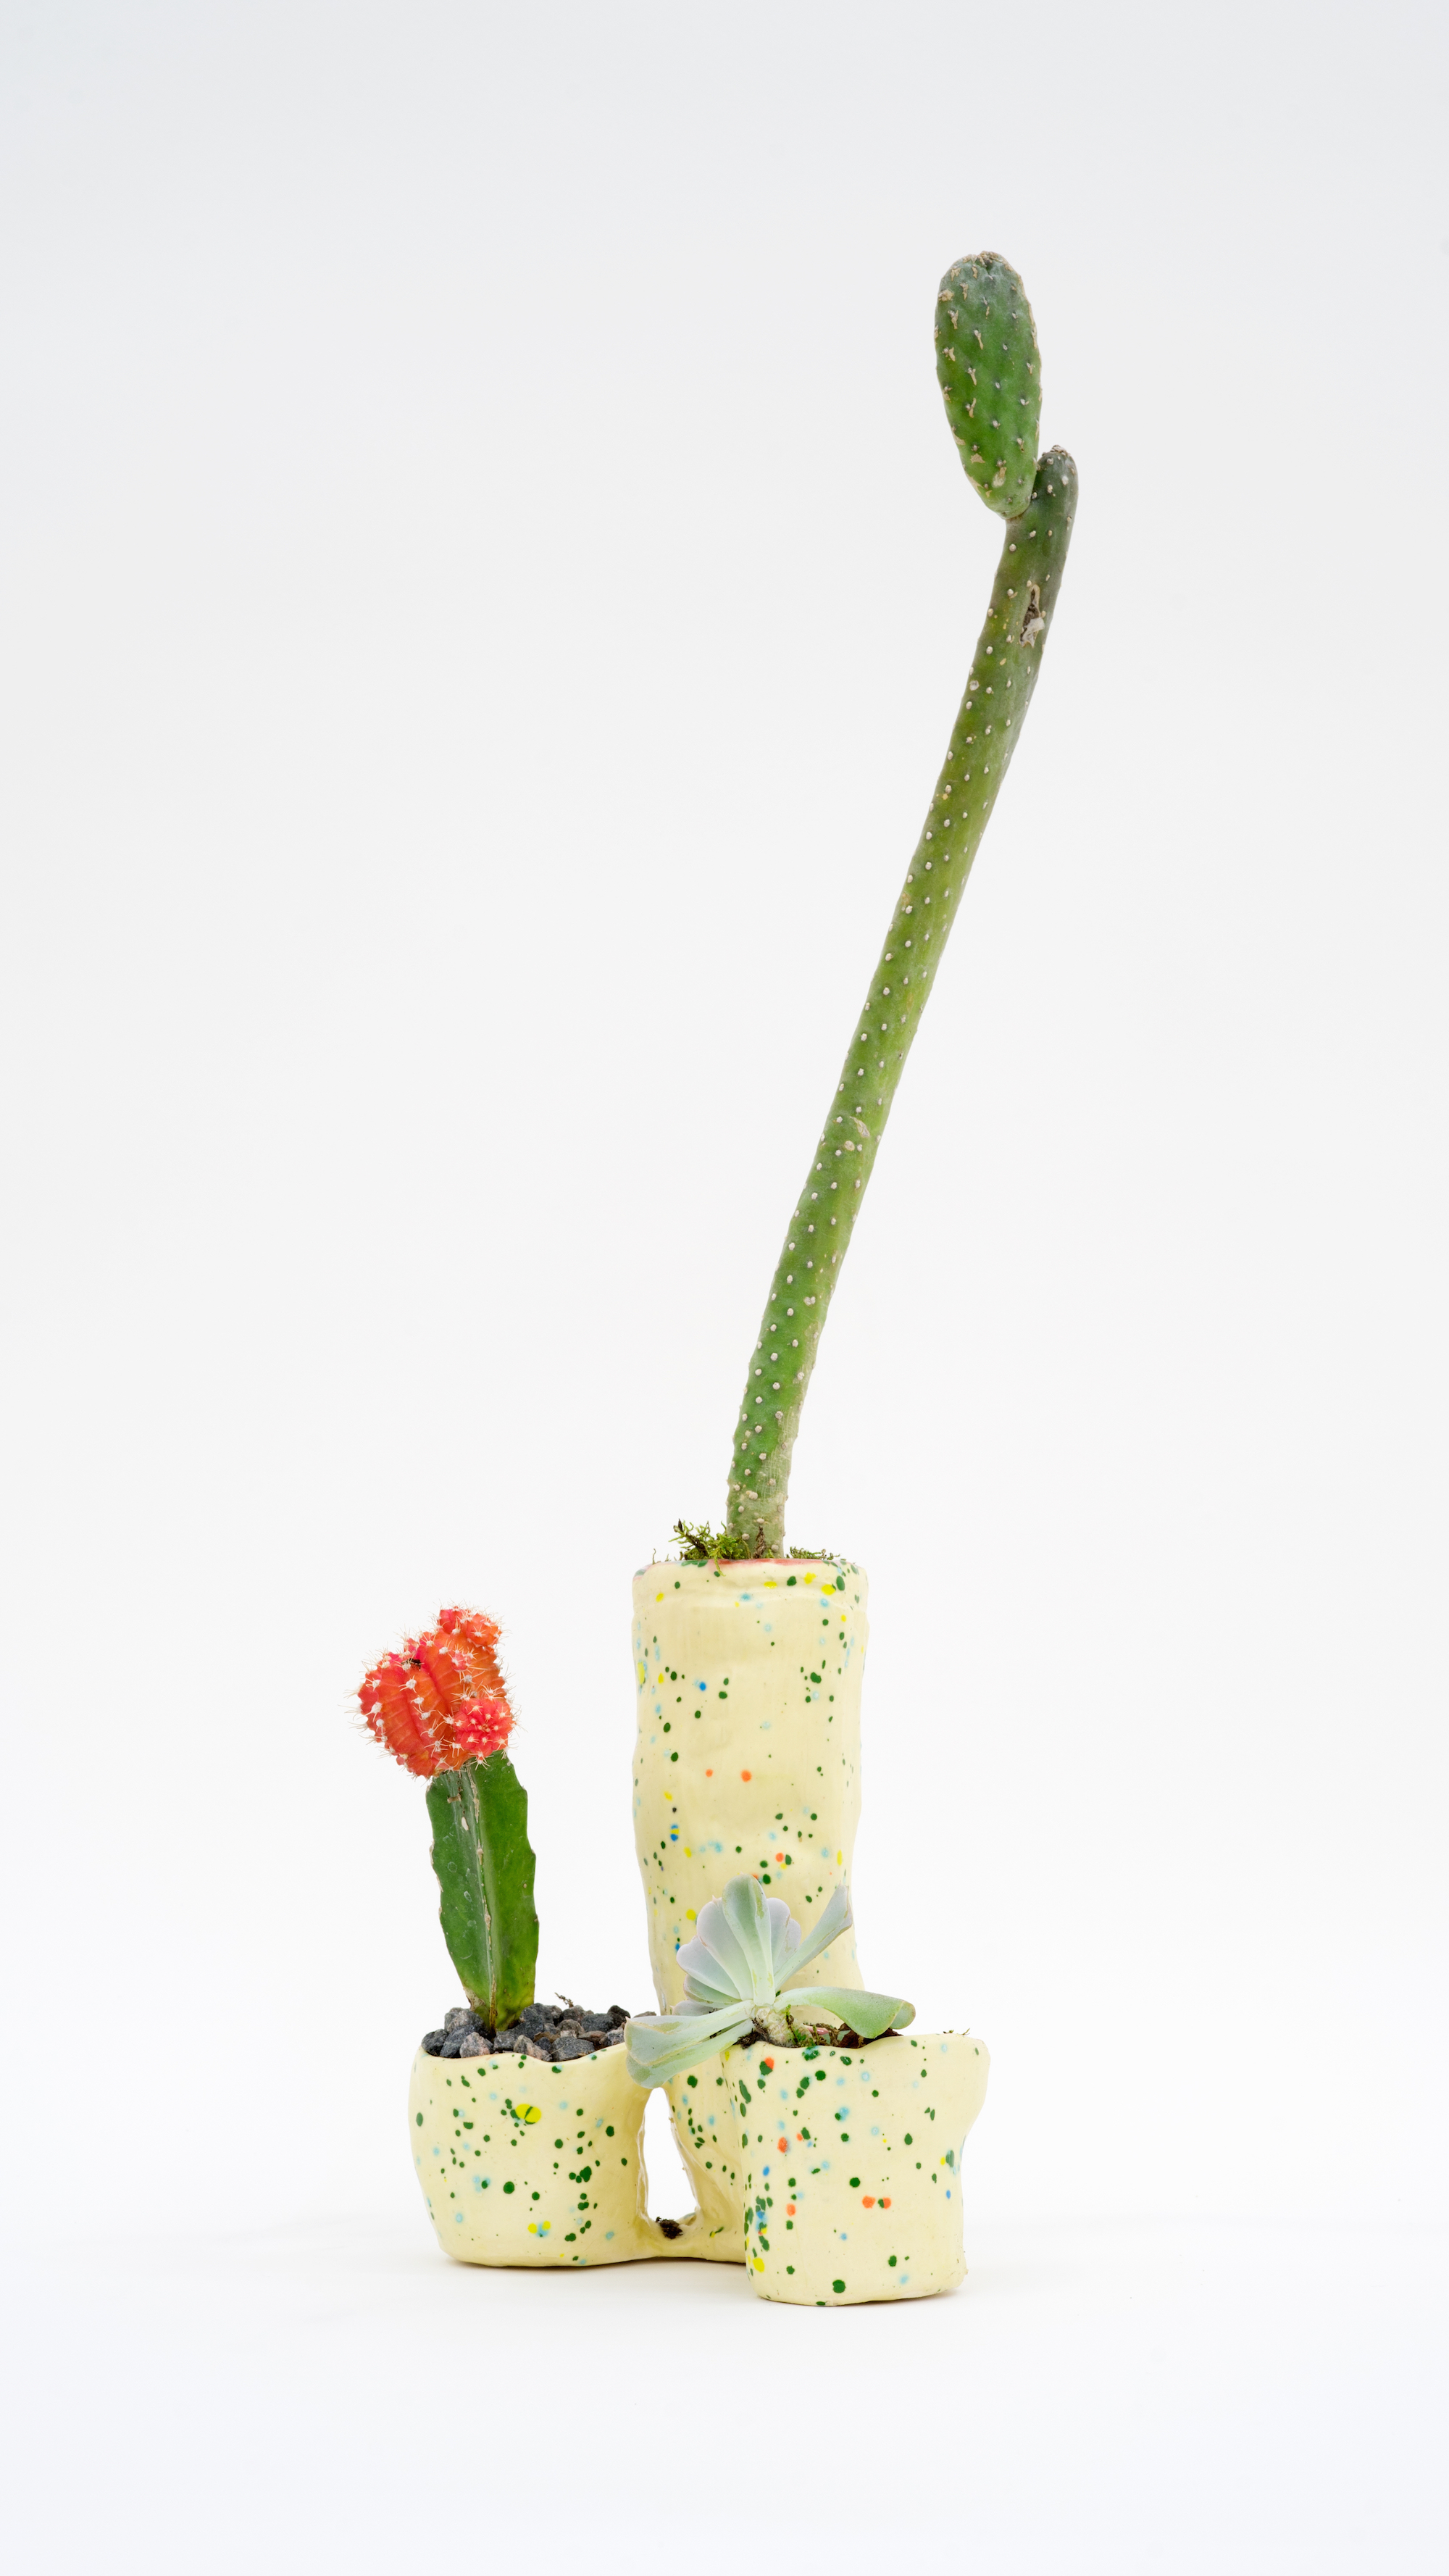    Fully Extended , 2016   Ceramic, cacti  21 × 6 × 4 in  53.3 × 15.2 × 10.2 cm 